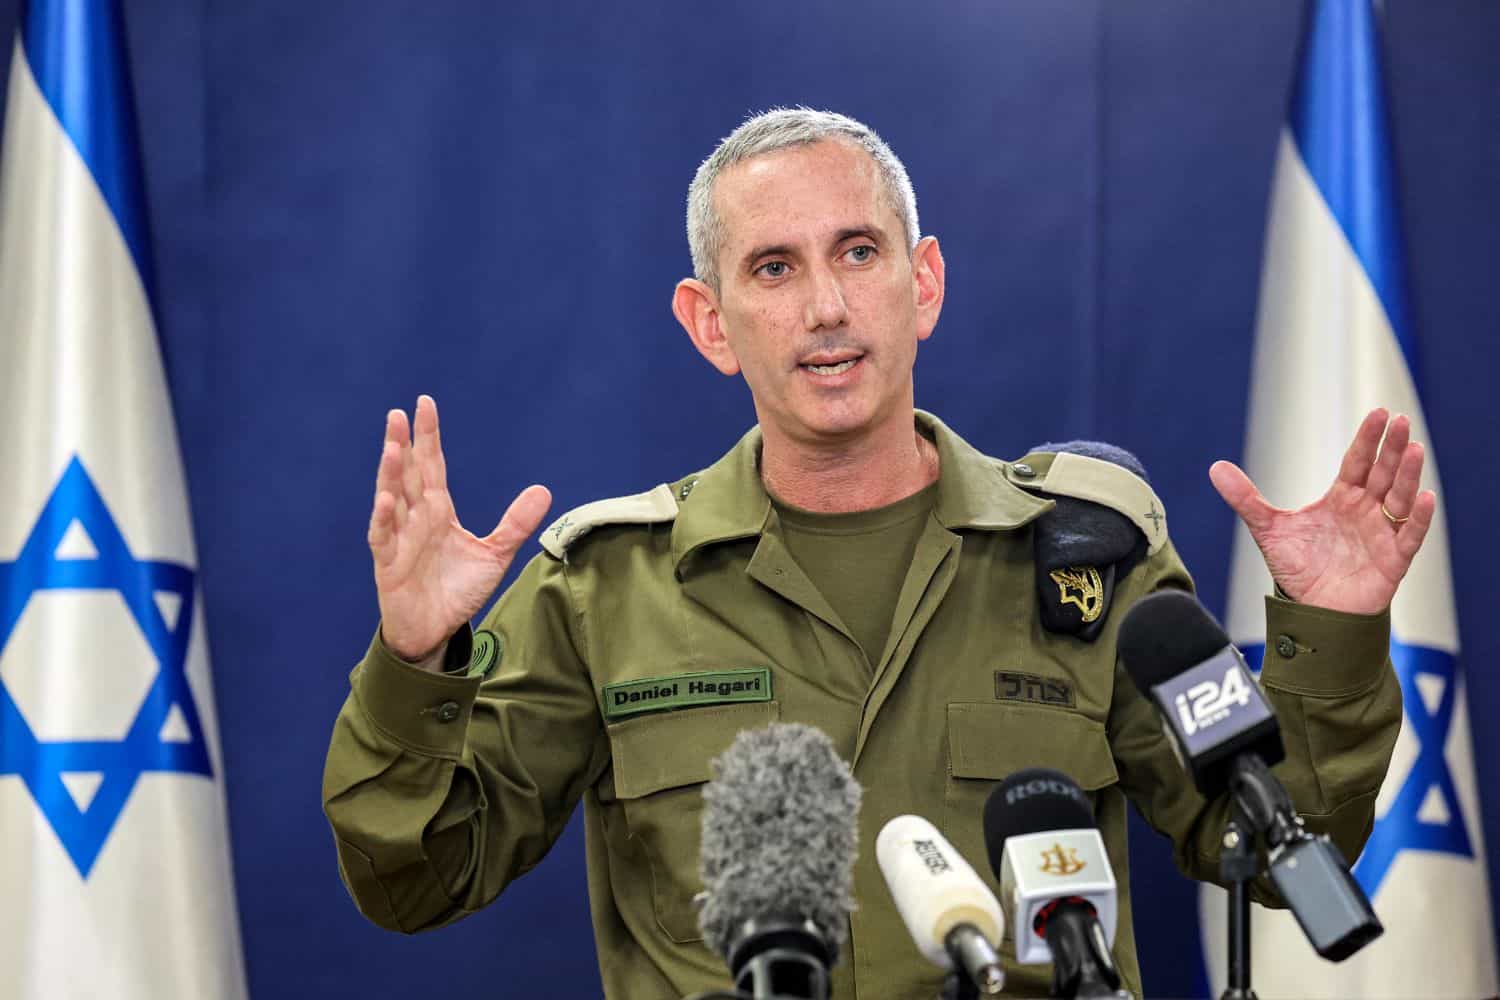 Porta-voz das Forças de Defesa de Israel (IDF), Daniel Hagari,  (foto: GIL COHEN-MAGEN / AFP)